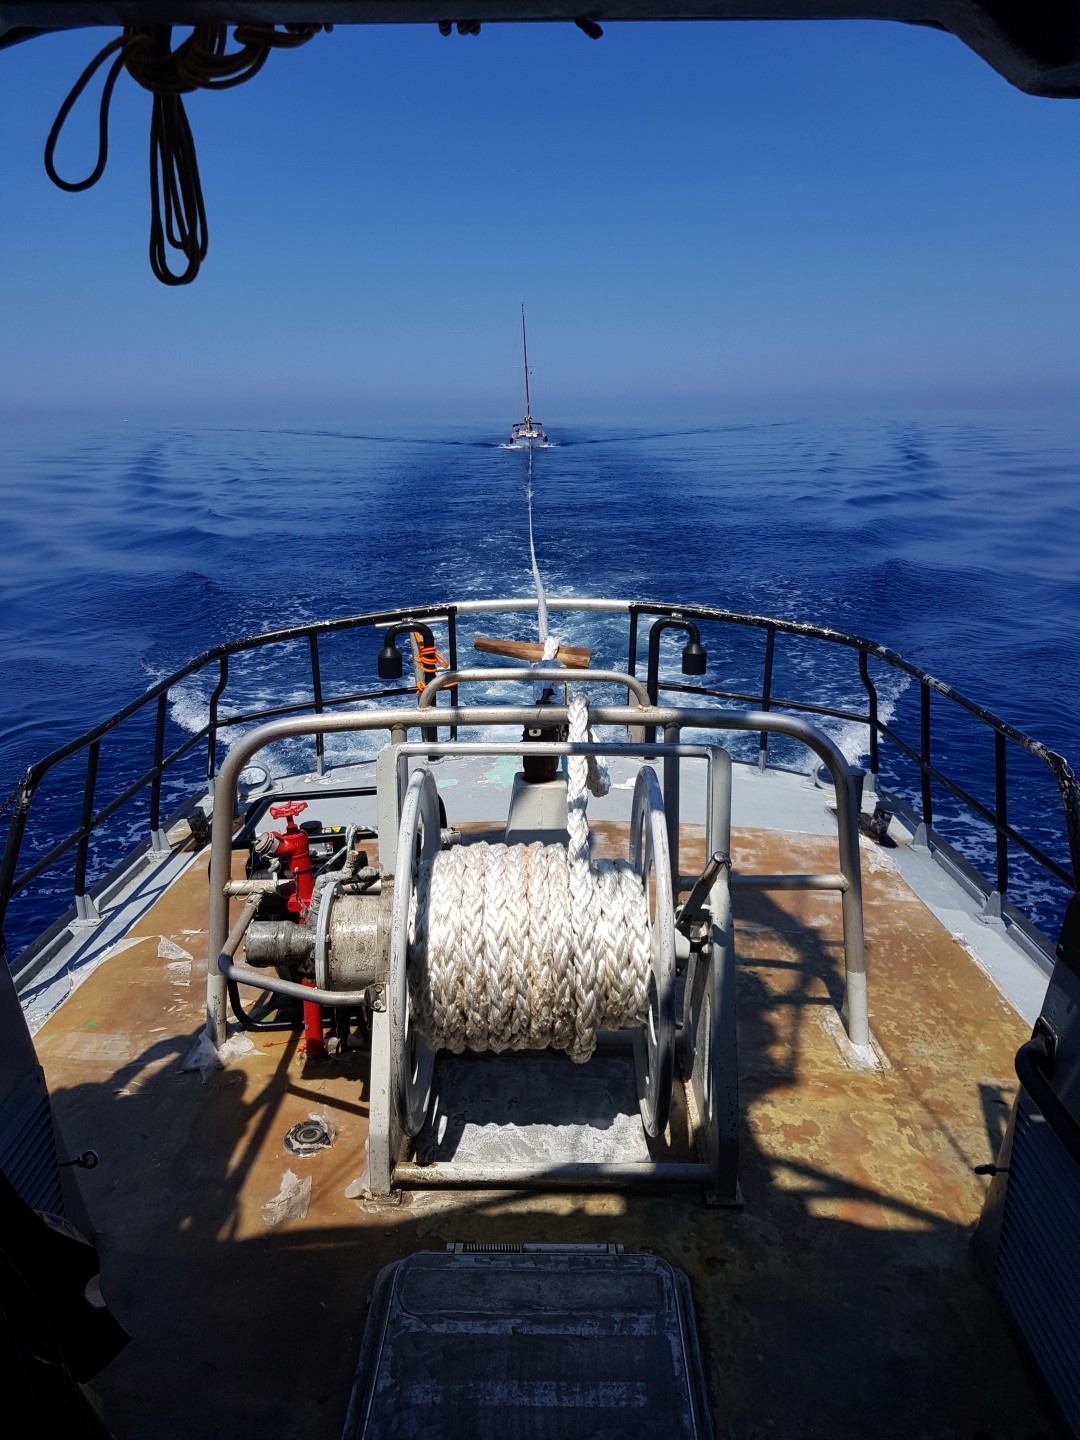 Un voilier en difficulté remorqué par la  vedette de la SNSM Calvi-Balagne